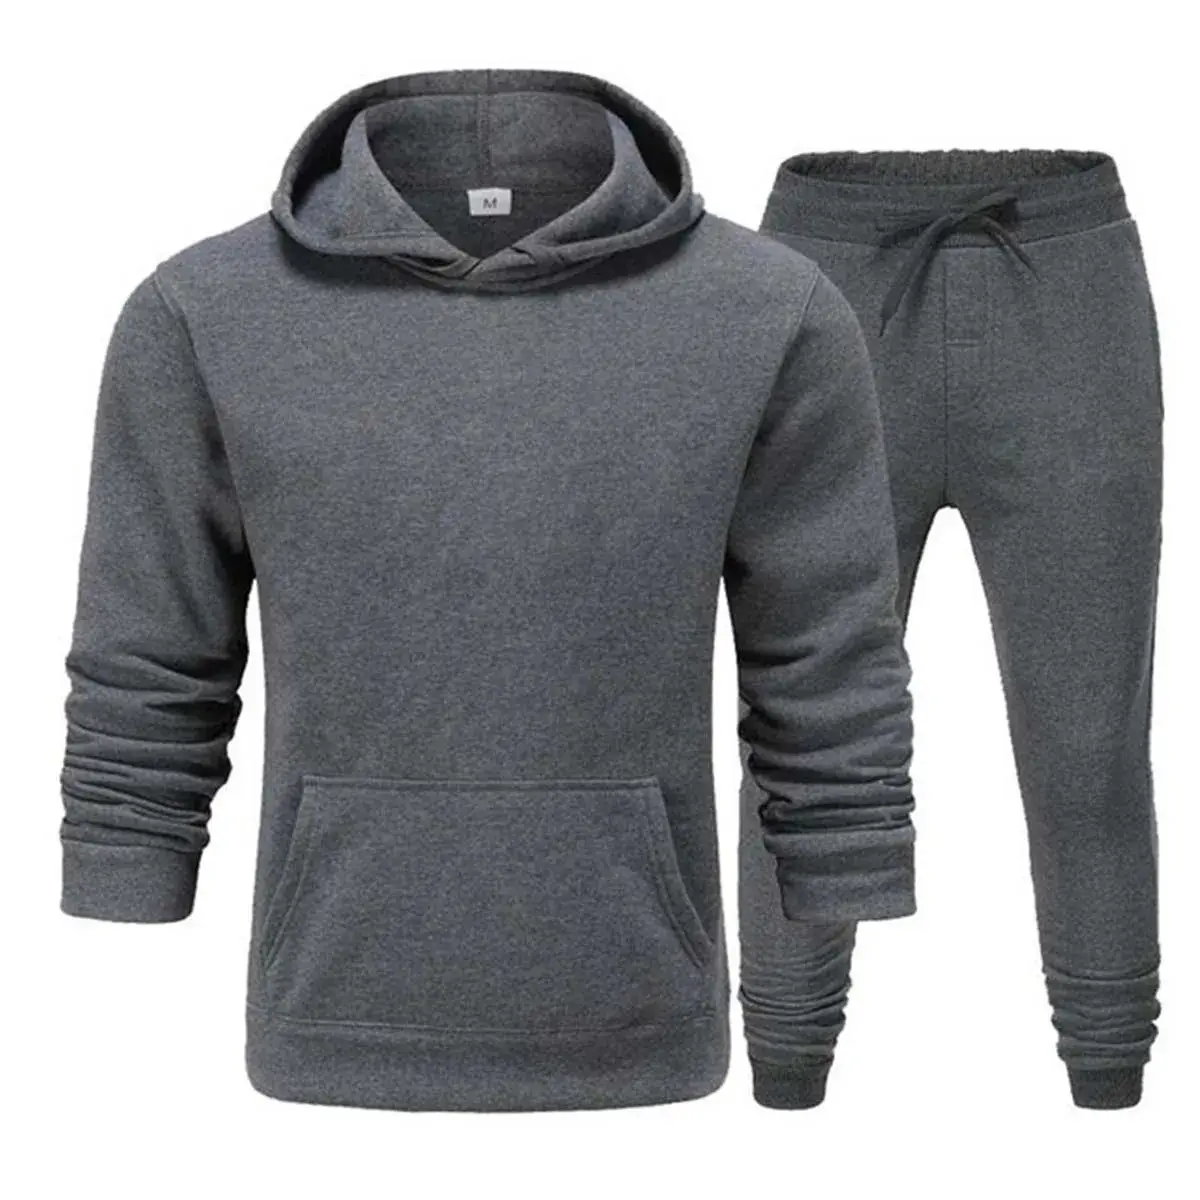 Homens sportswear hoodie terno outono/inverno dos homens camisola com capuz e calças de moletom duas peças desgaste dos homens